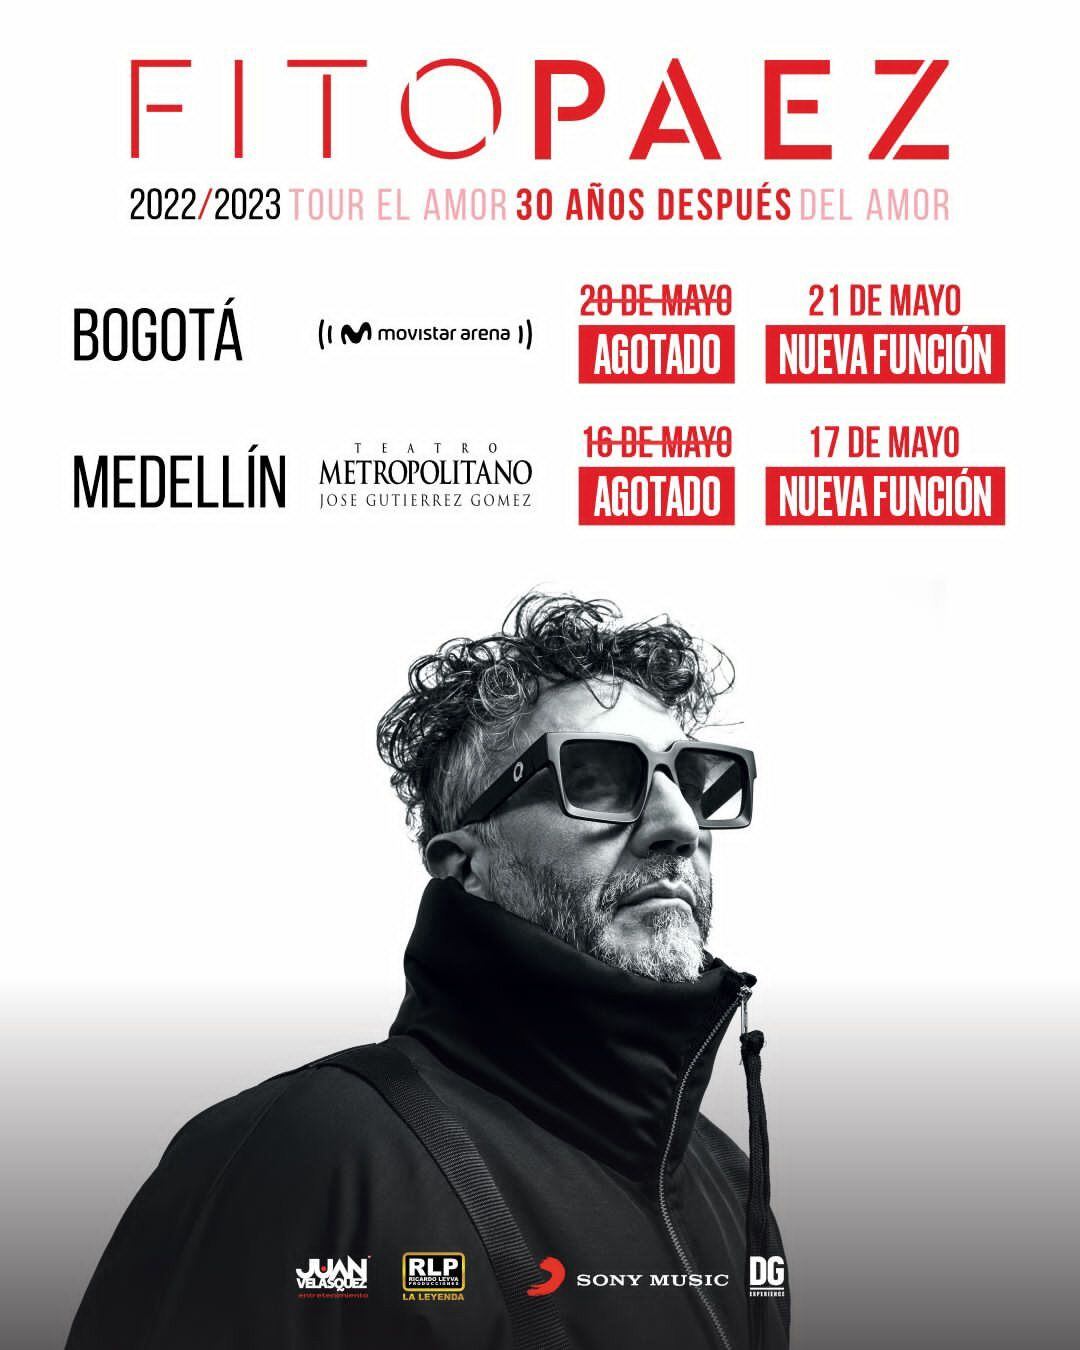 Fito Páez anunció dos nuevas fechas de conciertos en Bogotá y Medellín